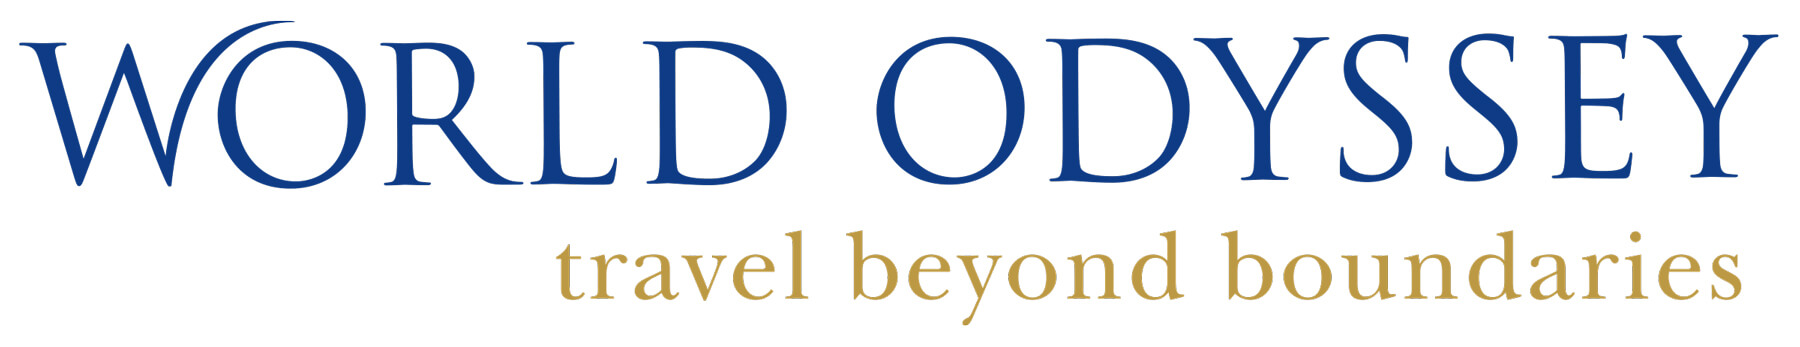 World Odyssey new logo